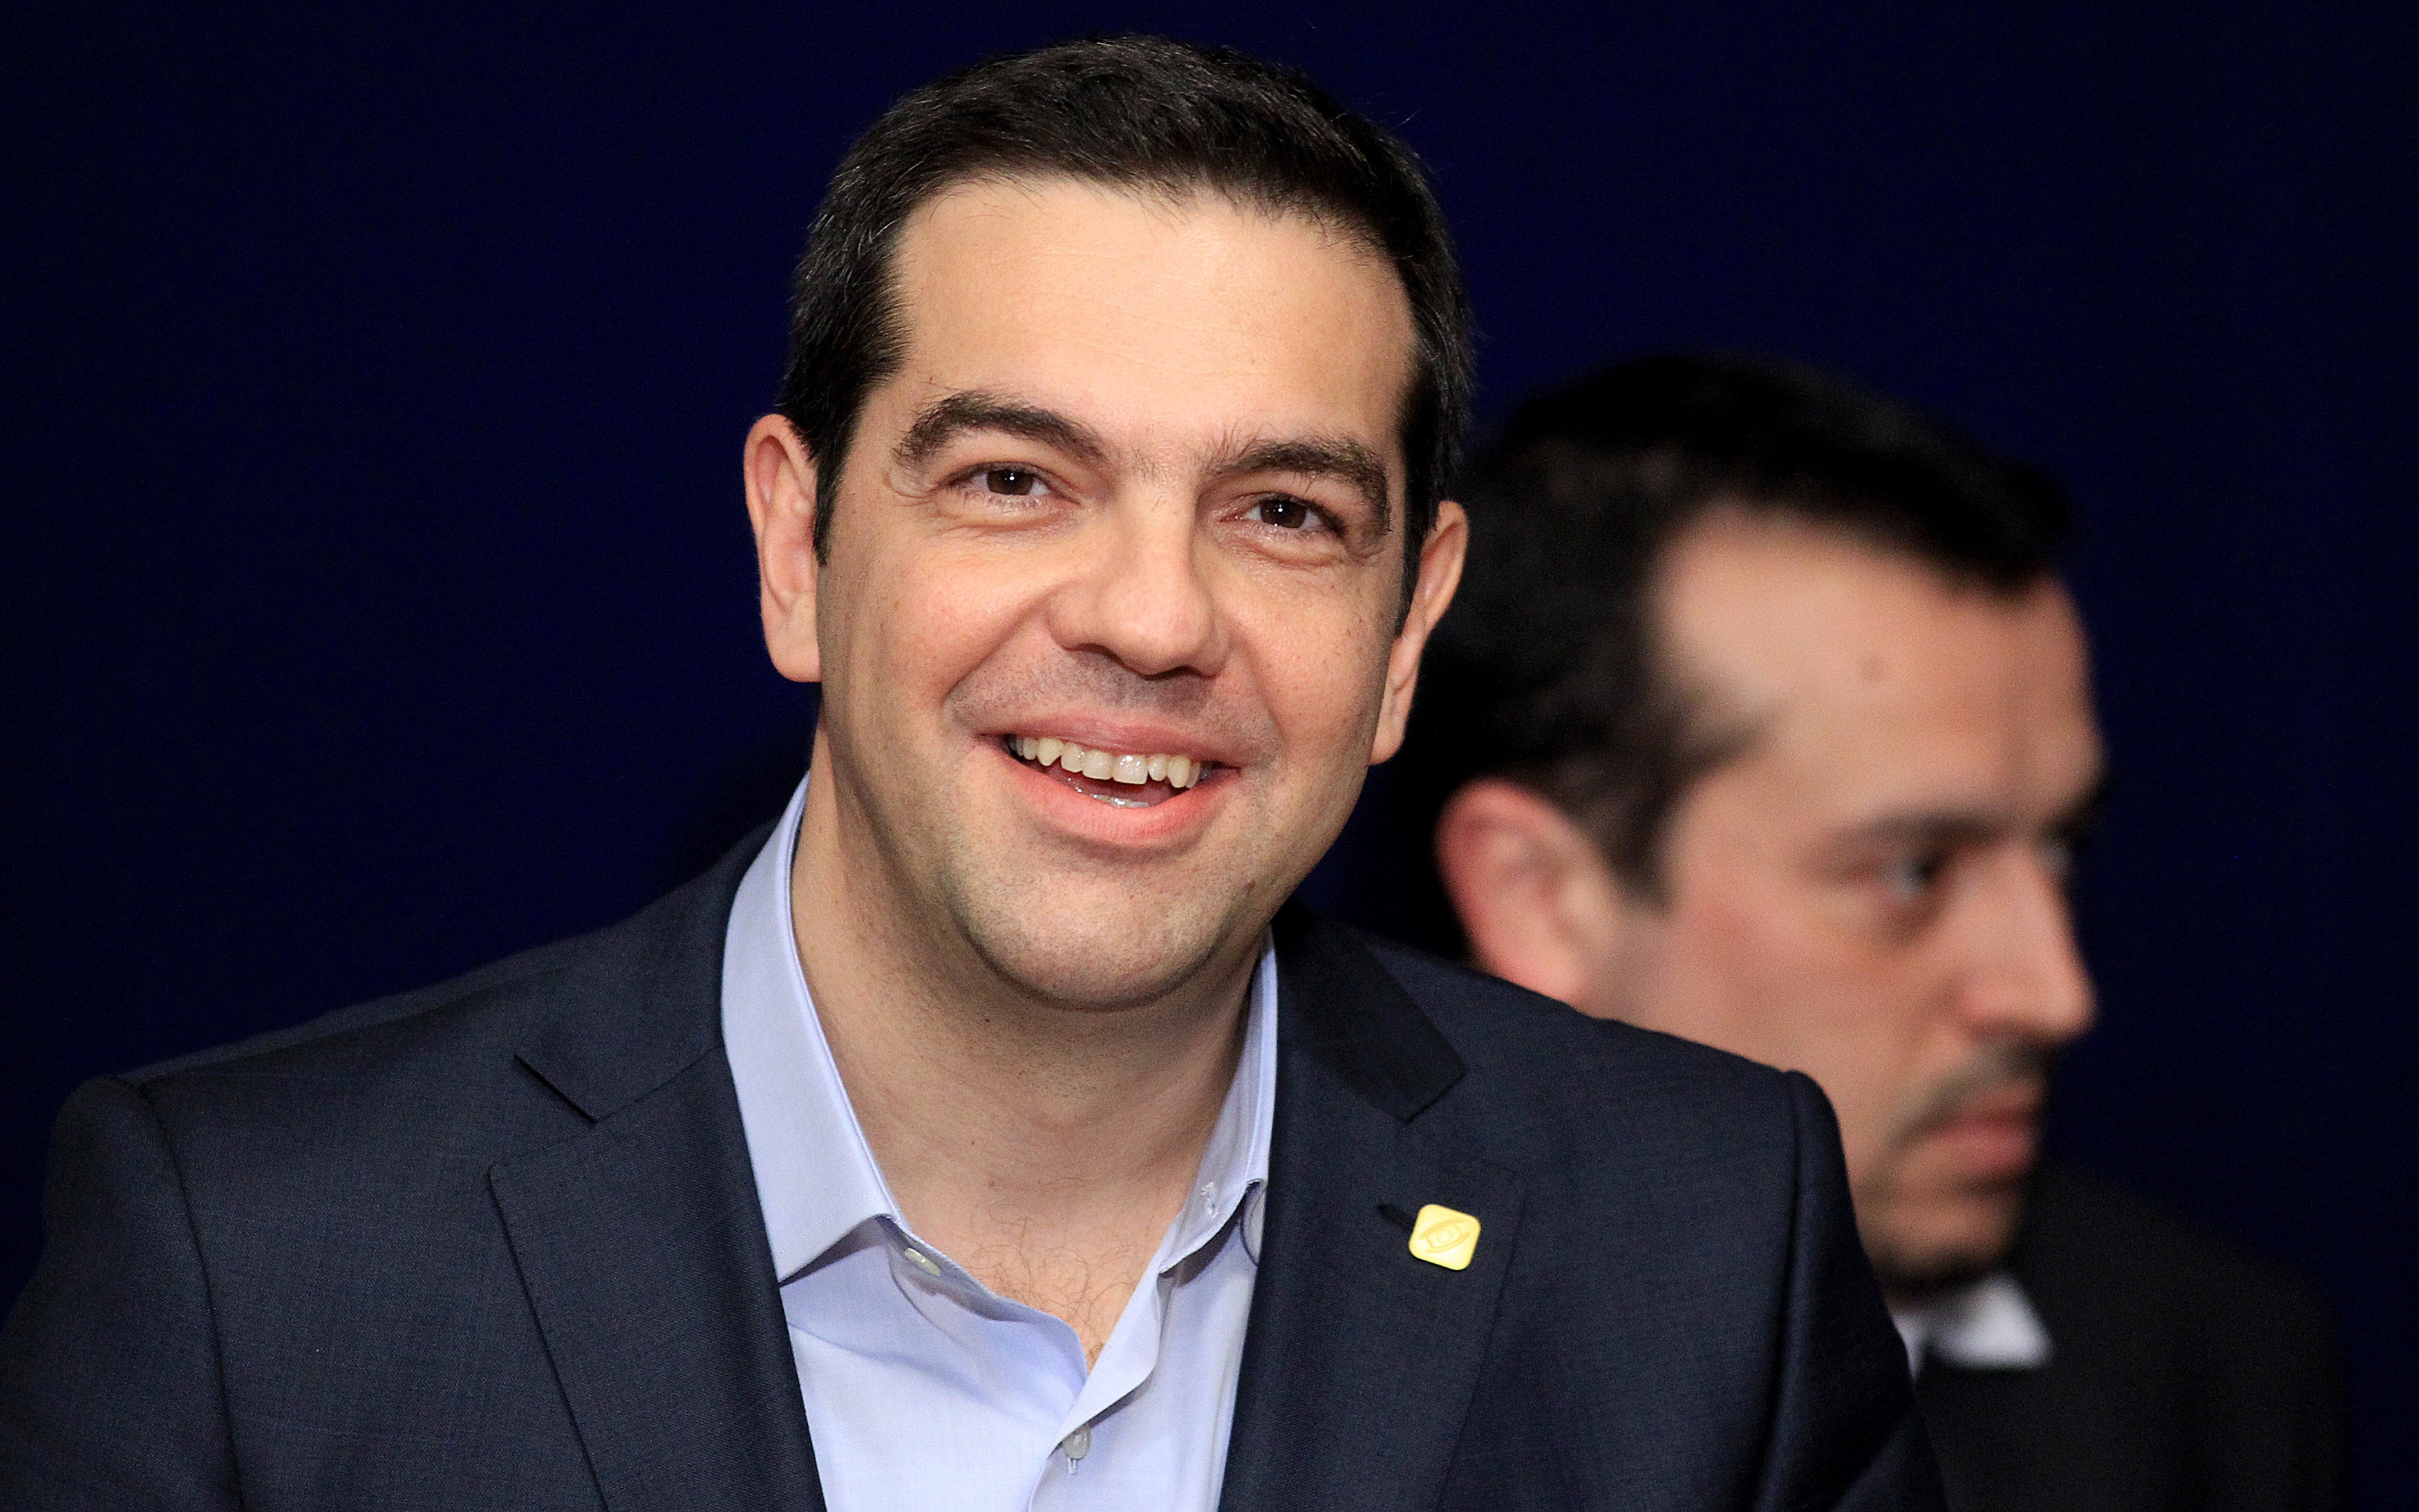 Τσίπρας στο Stern: Σε έξι μήνες η Ελλάδα θα είναι μια άλλη χώρα